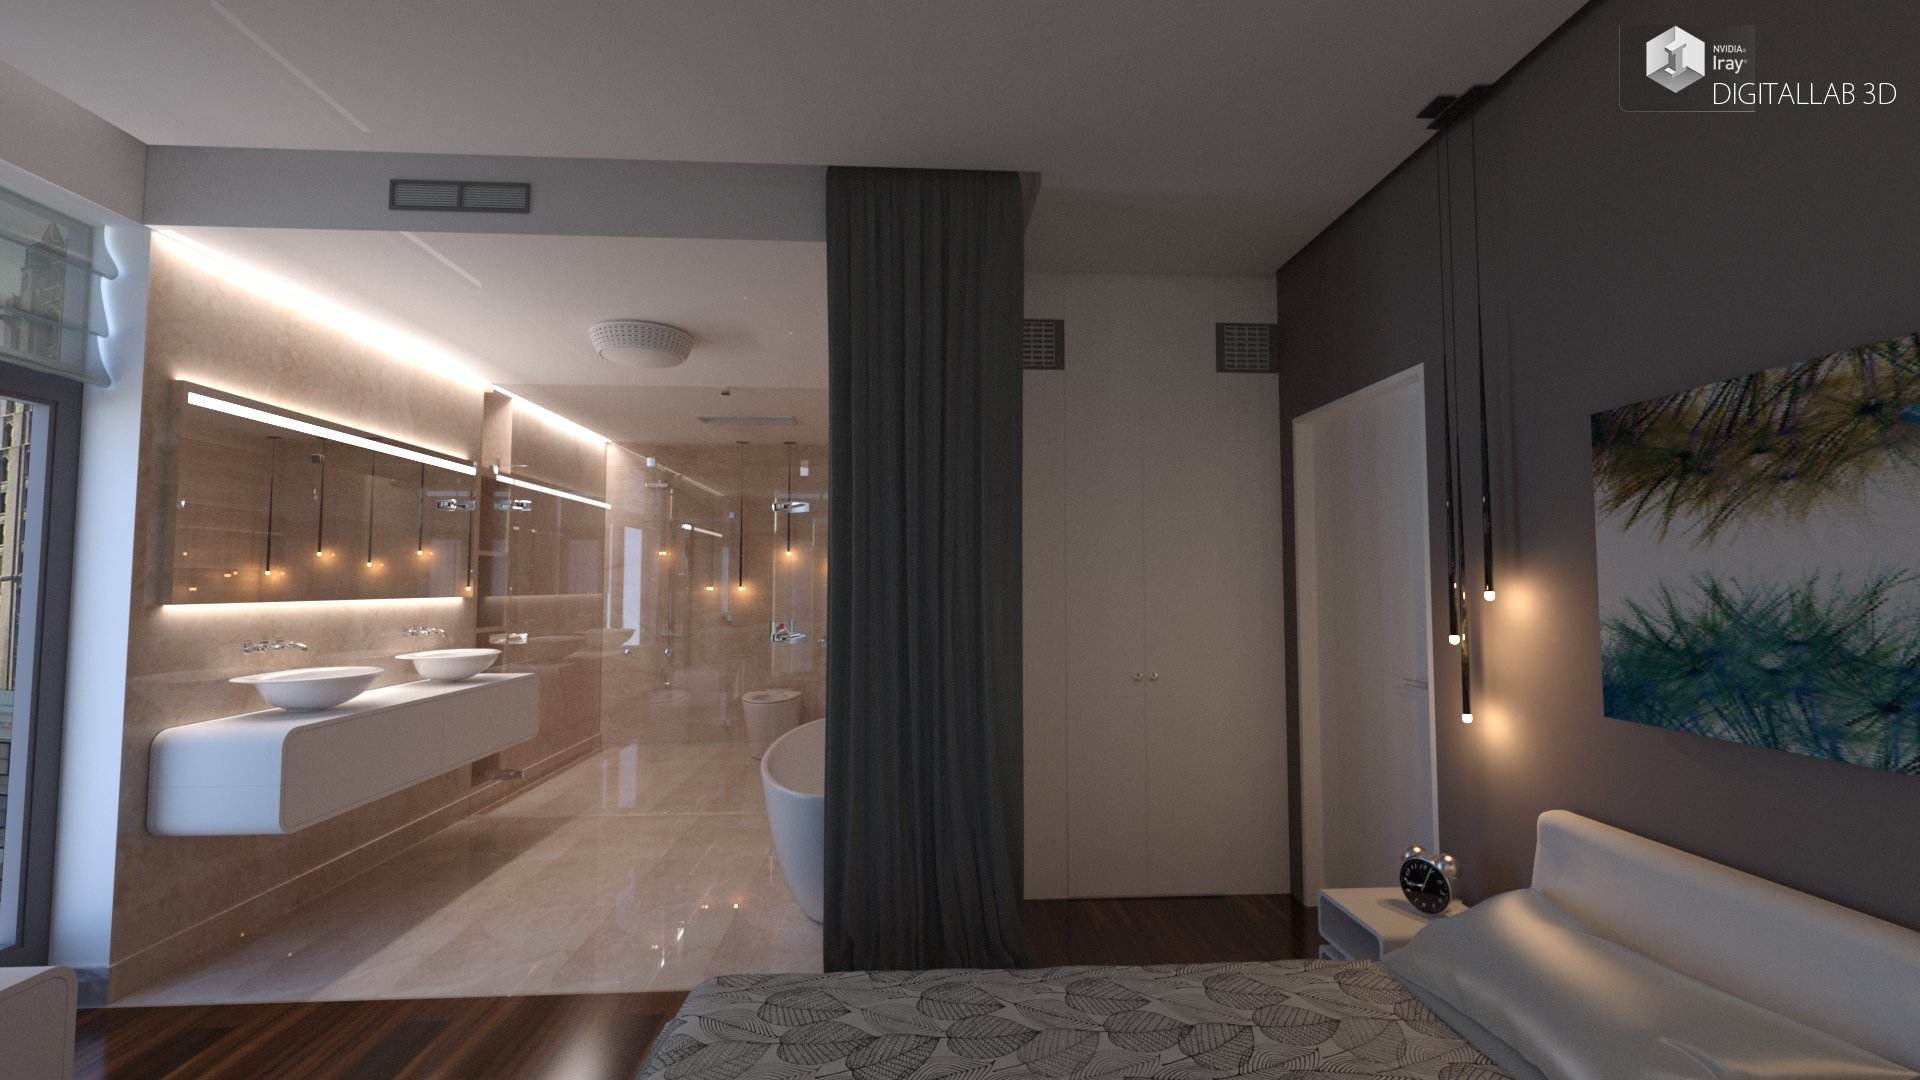 Designer Bedroom by: Digitallab3D, 3D Models by Daz 3D